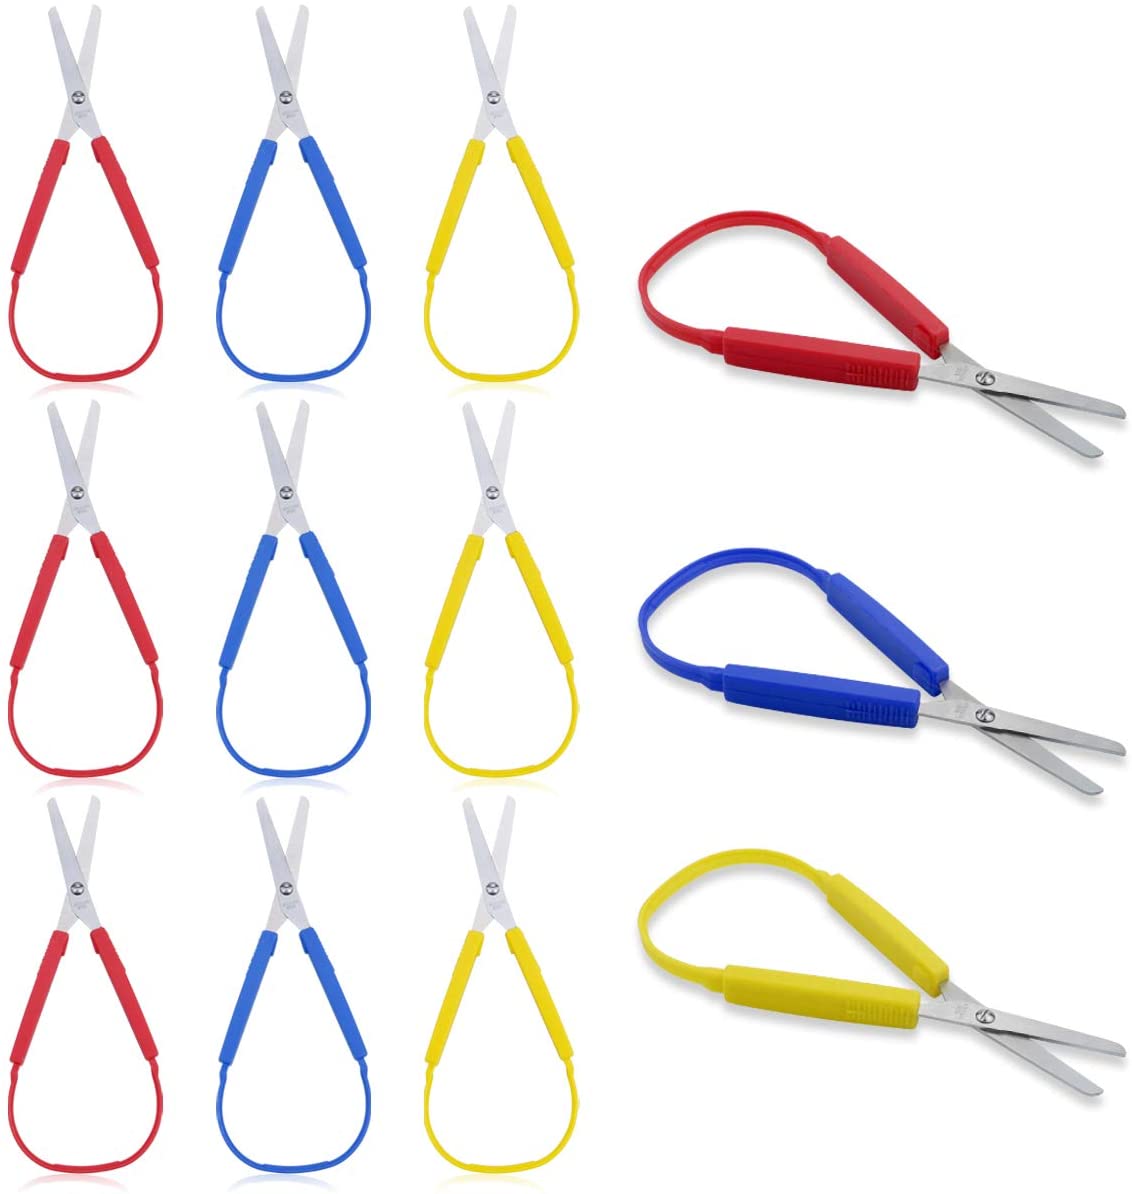 9 Pack Colorful Loop Scissors, Mini Self-Opening Circular Elastic